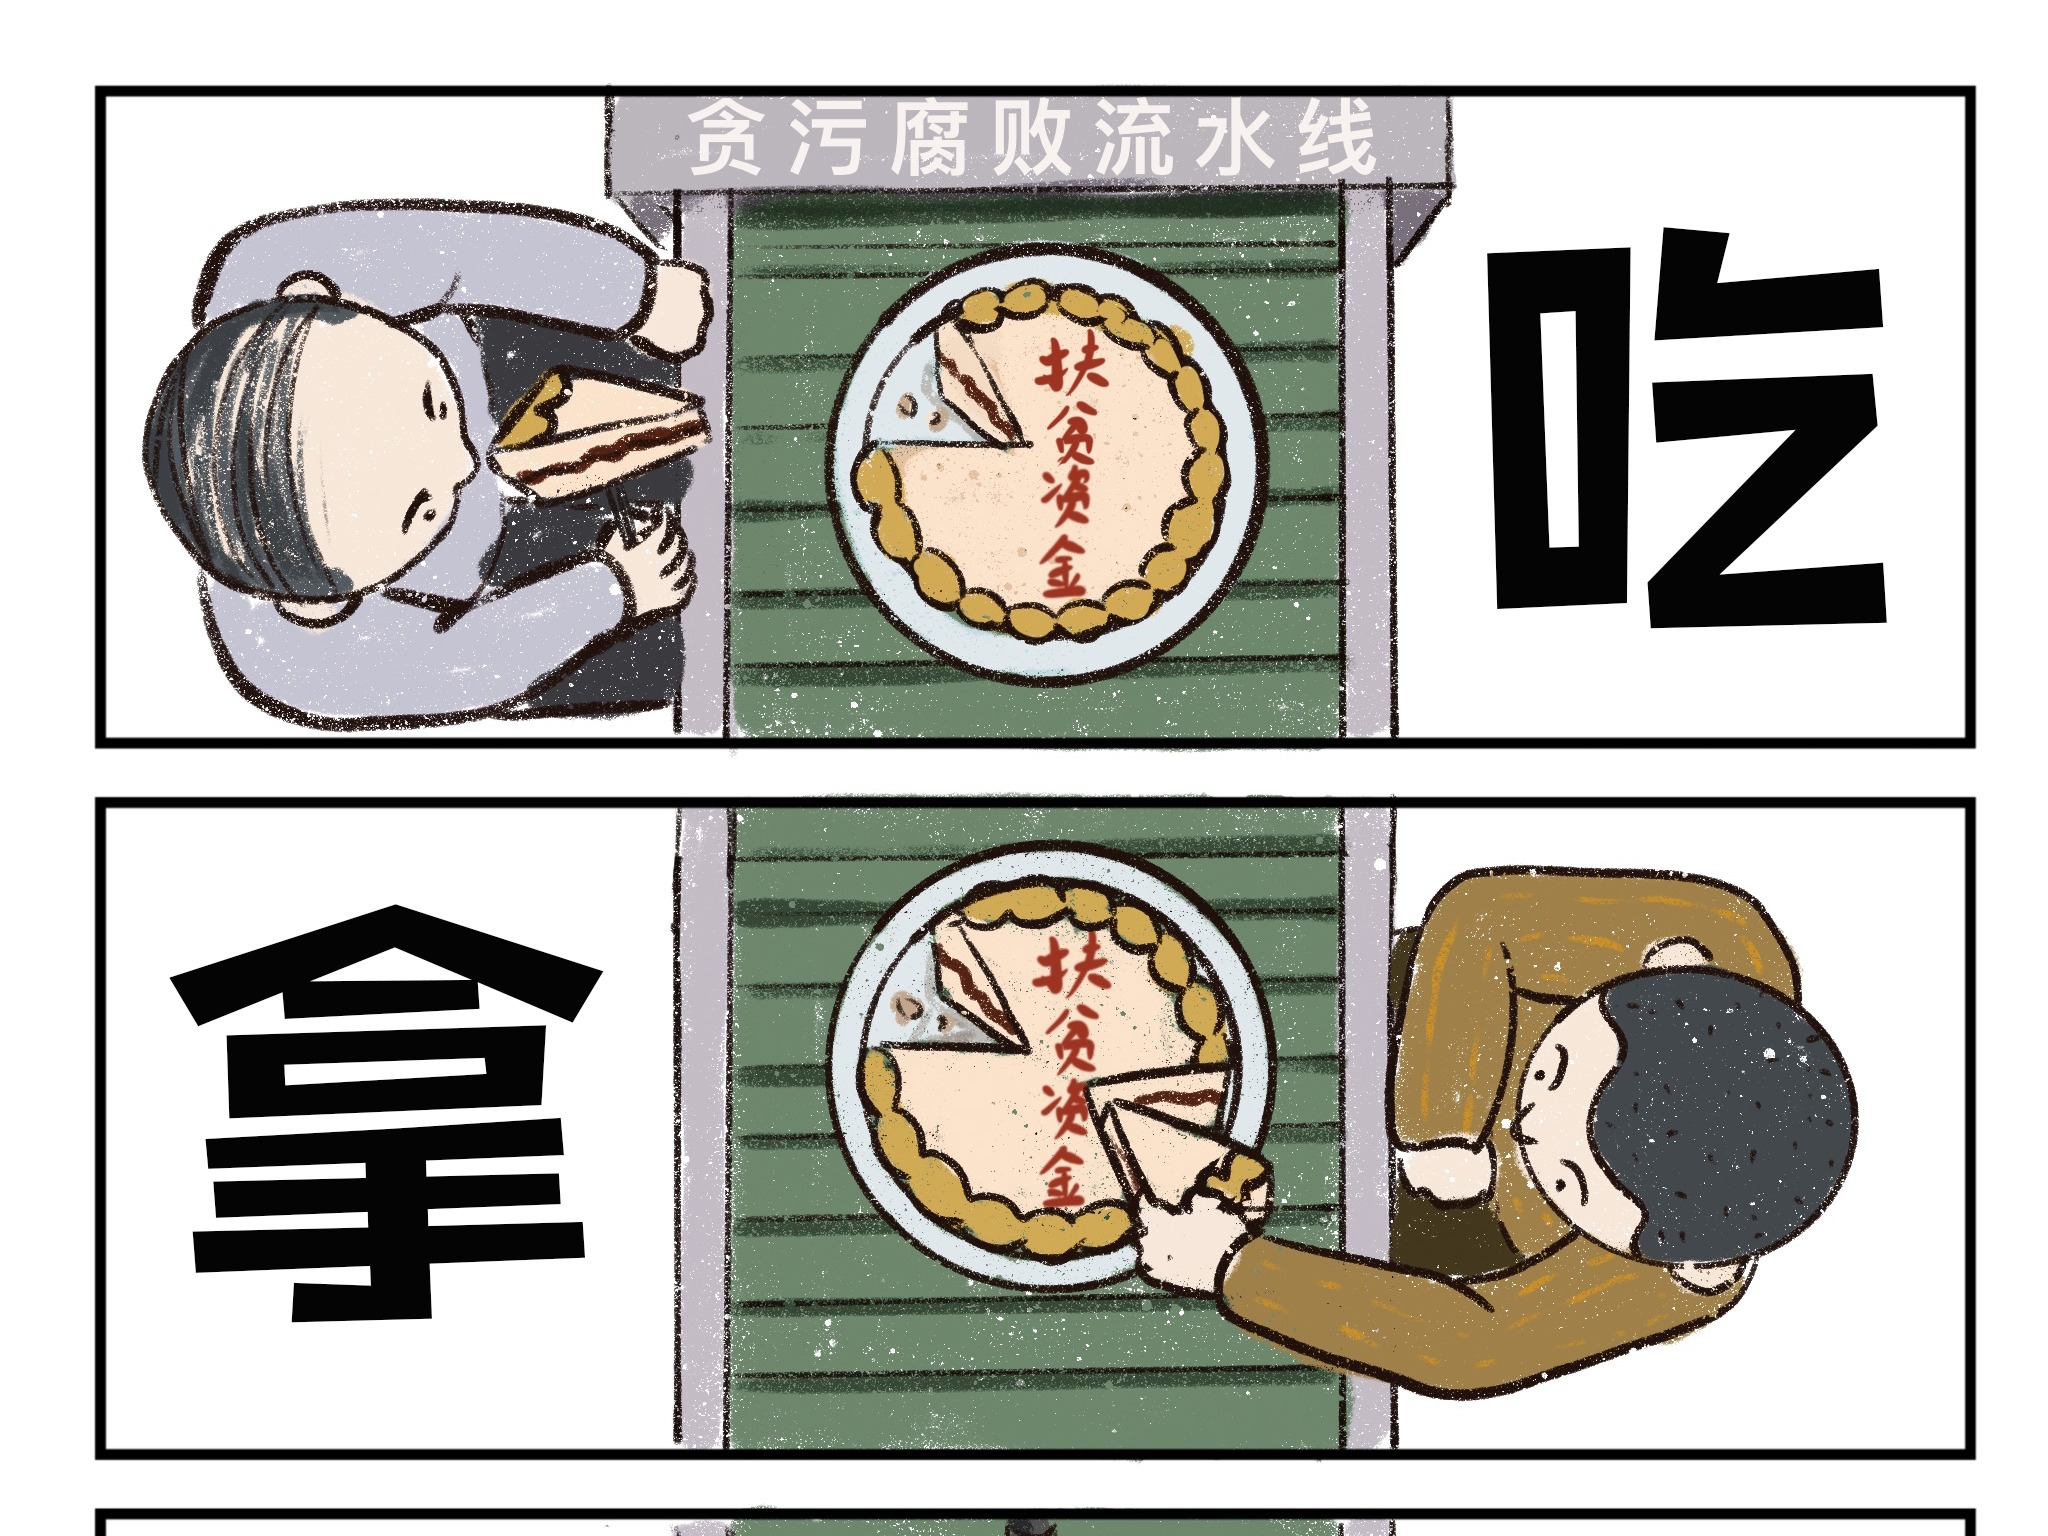 【腐向】日语有声漫画耽美广播剧Kiraboshi英文字幕--cd6_综合_动画_bilibili_哔哩哔哩